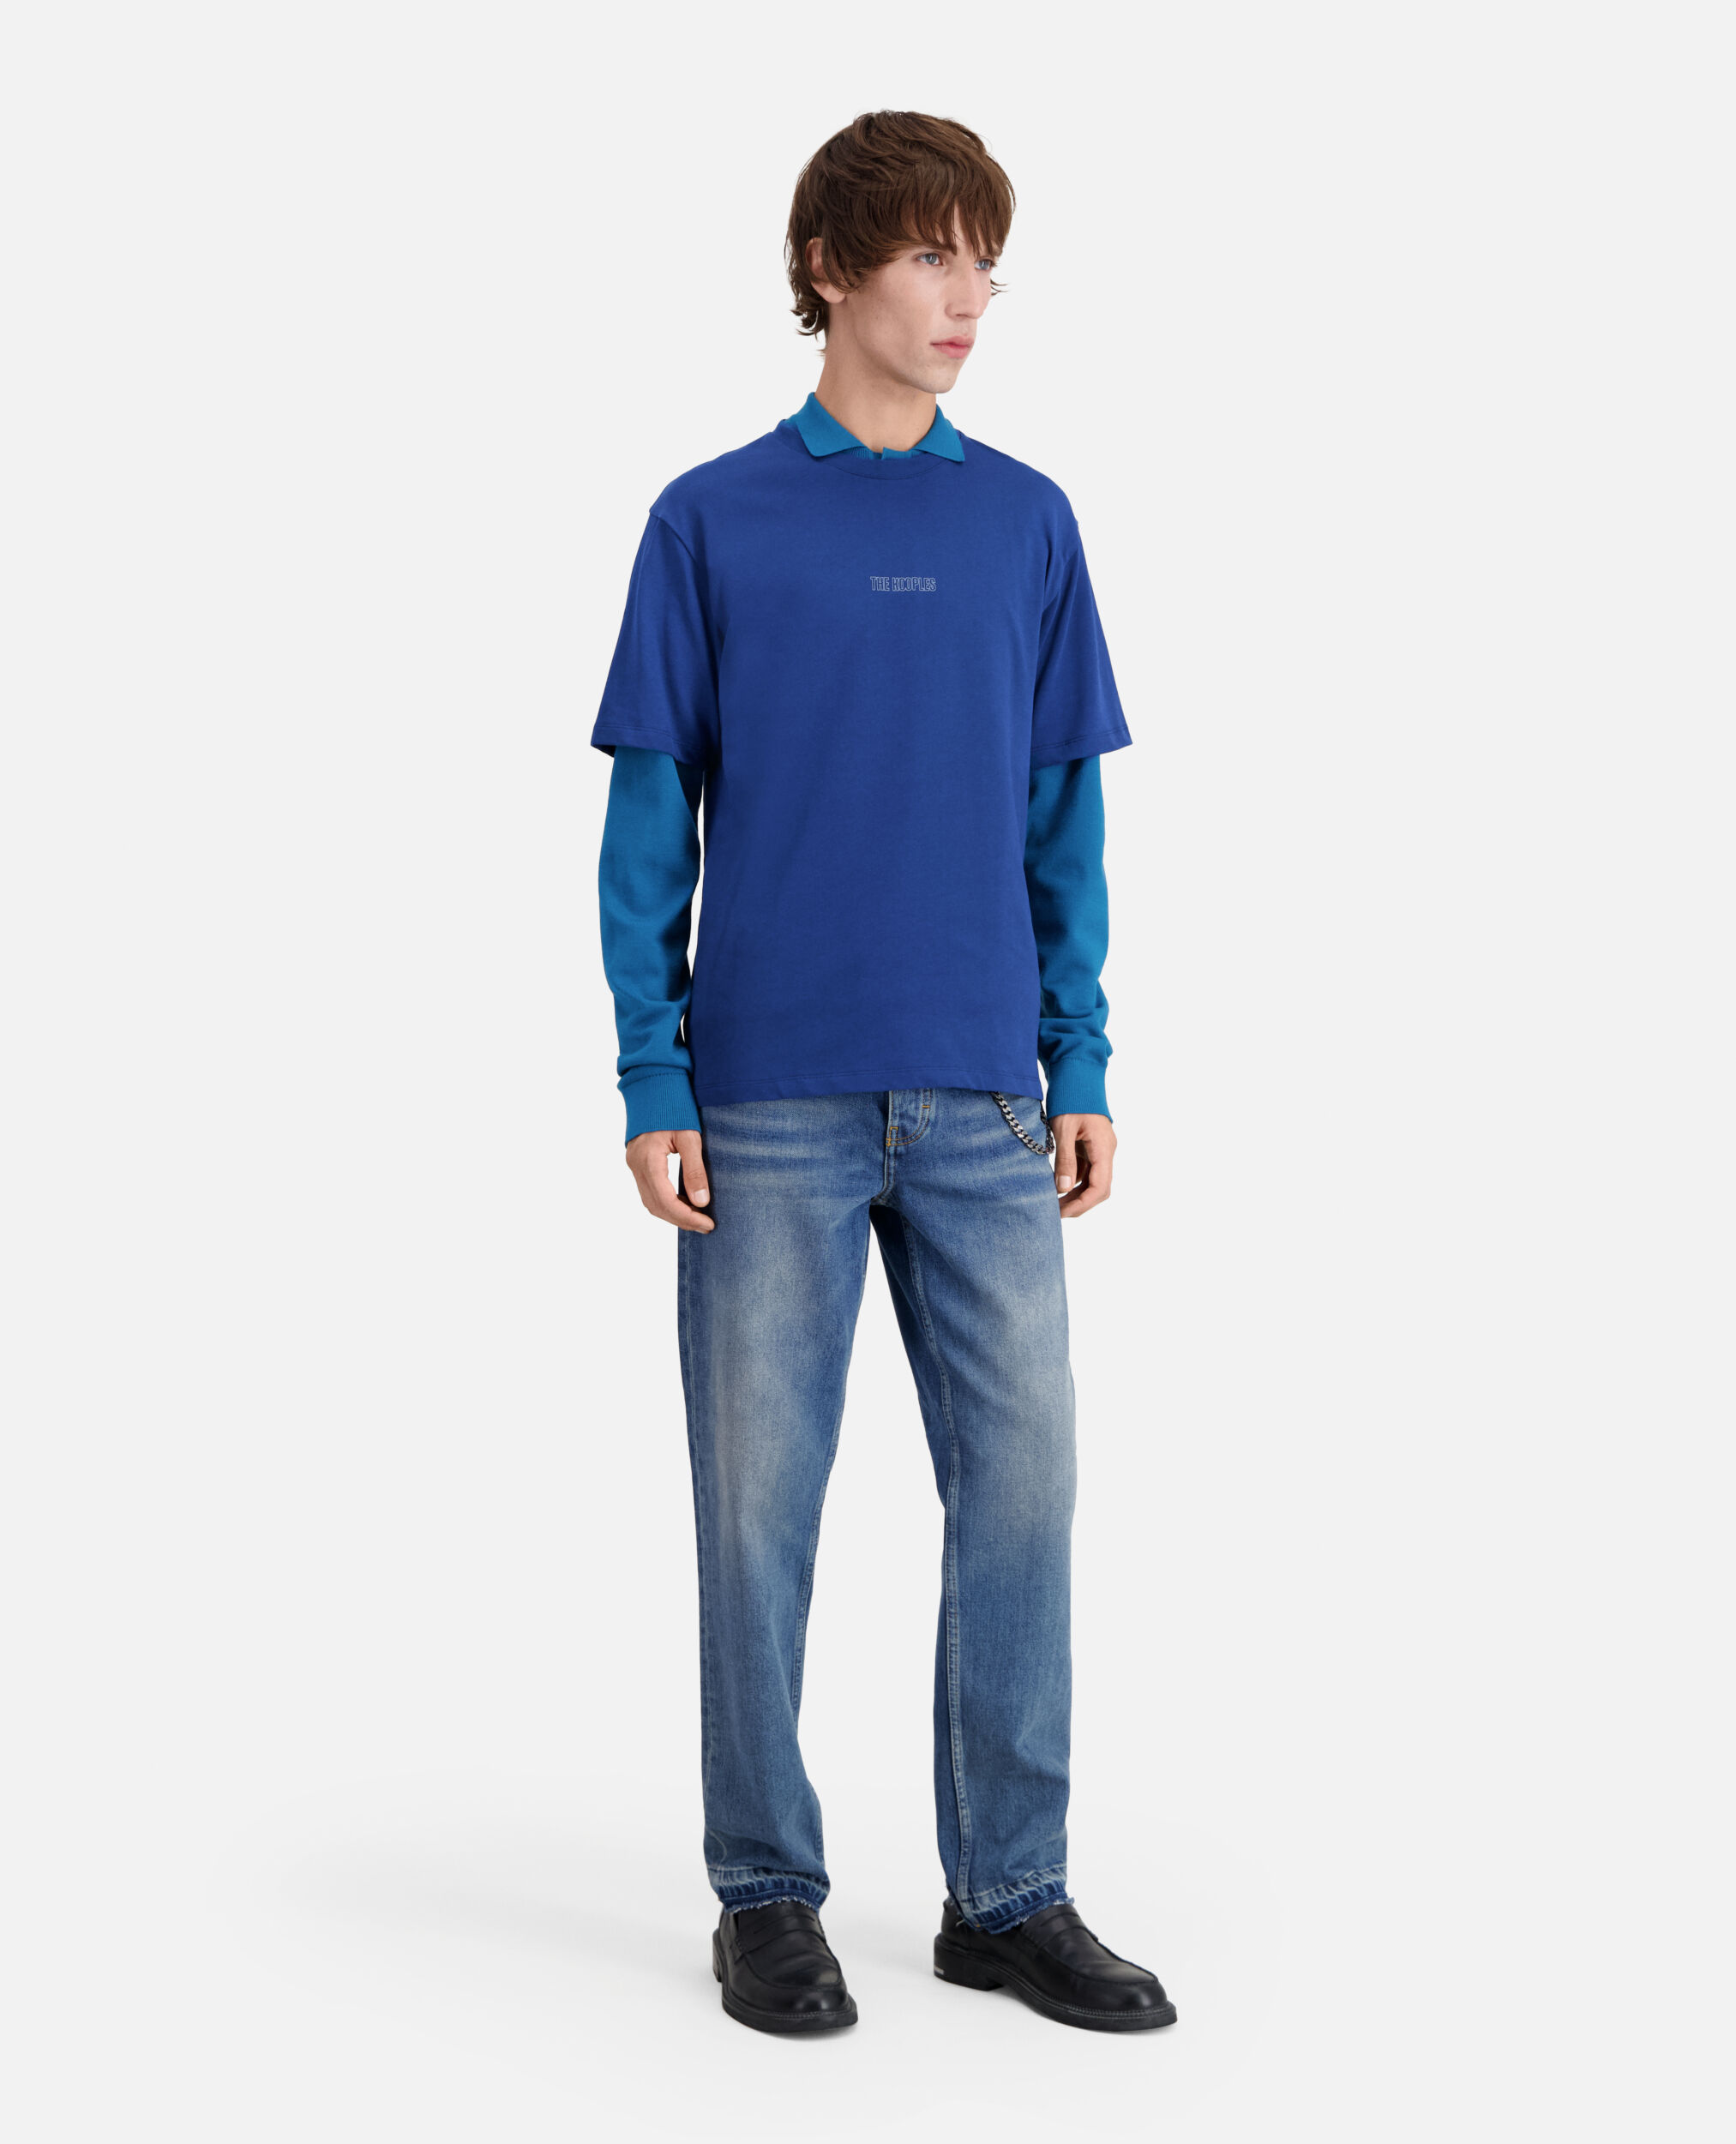 T-shirt Homme bleu vif avec logo, ROYAL BLUE - DARK NAVY, hi-res image number null